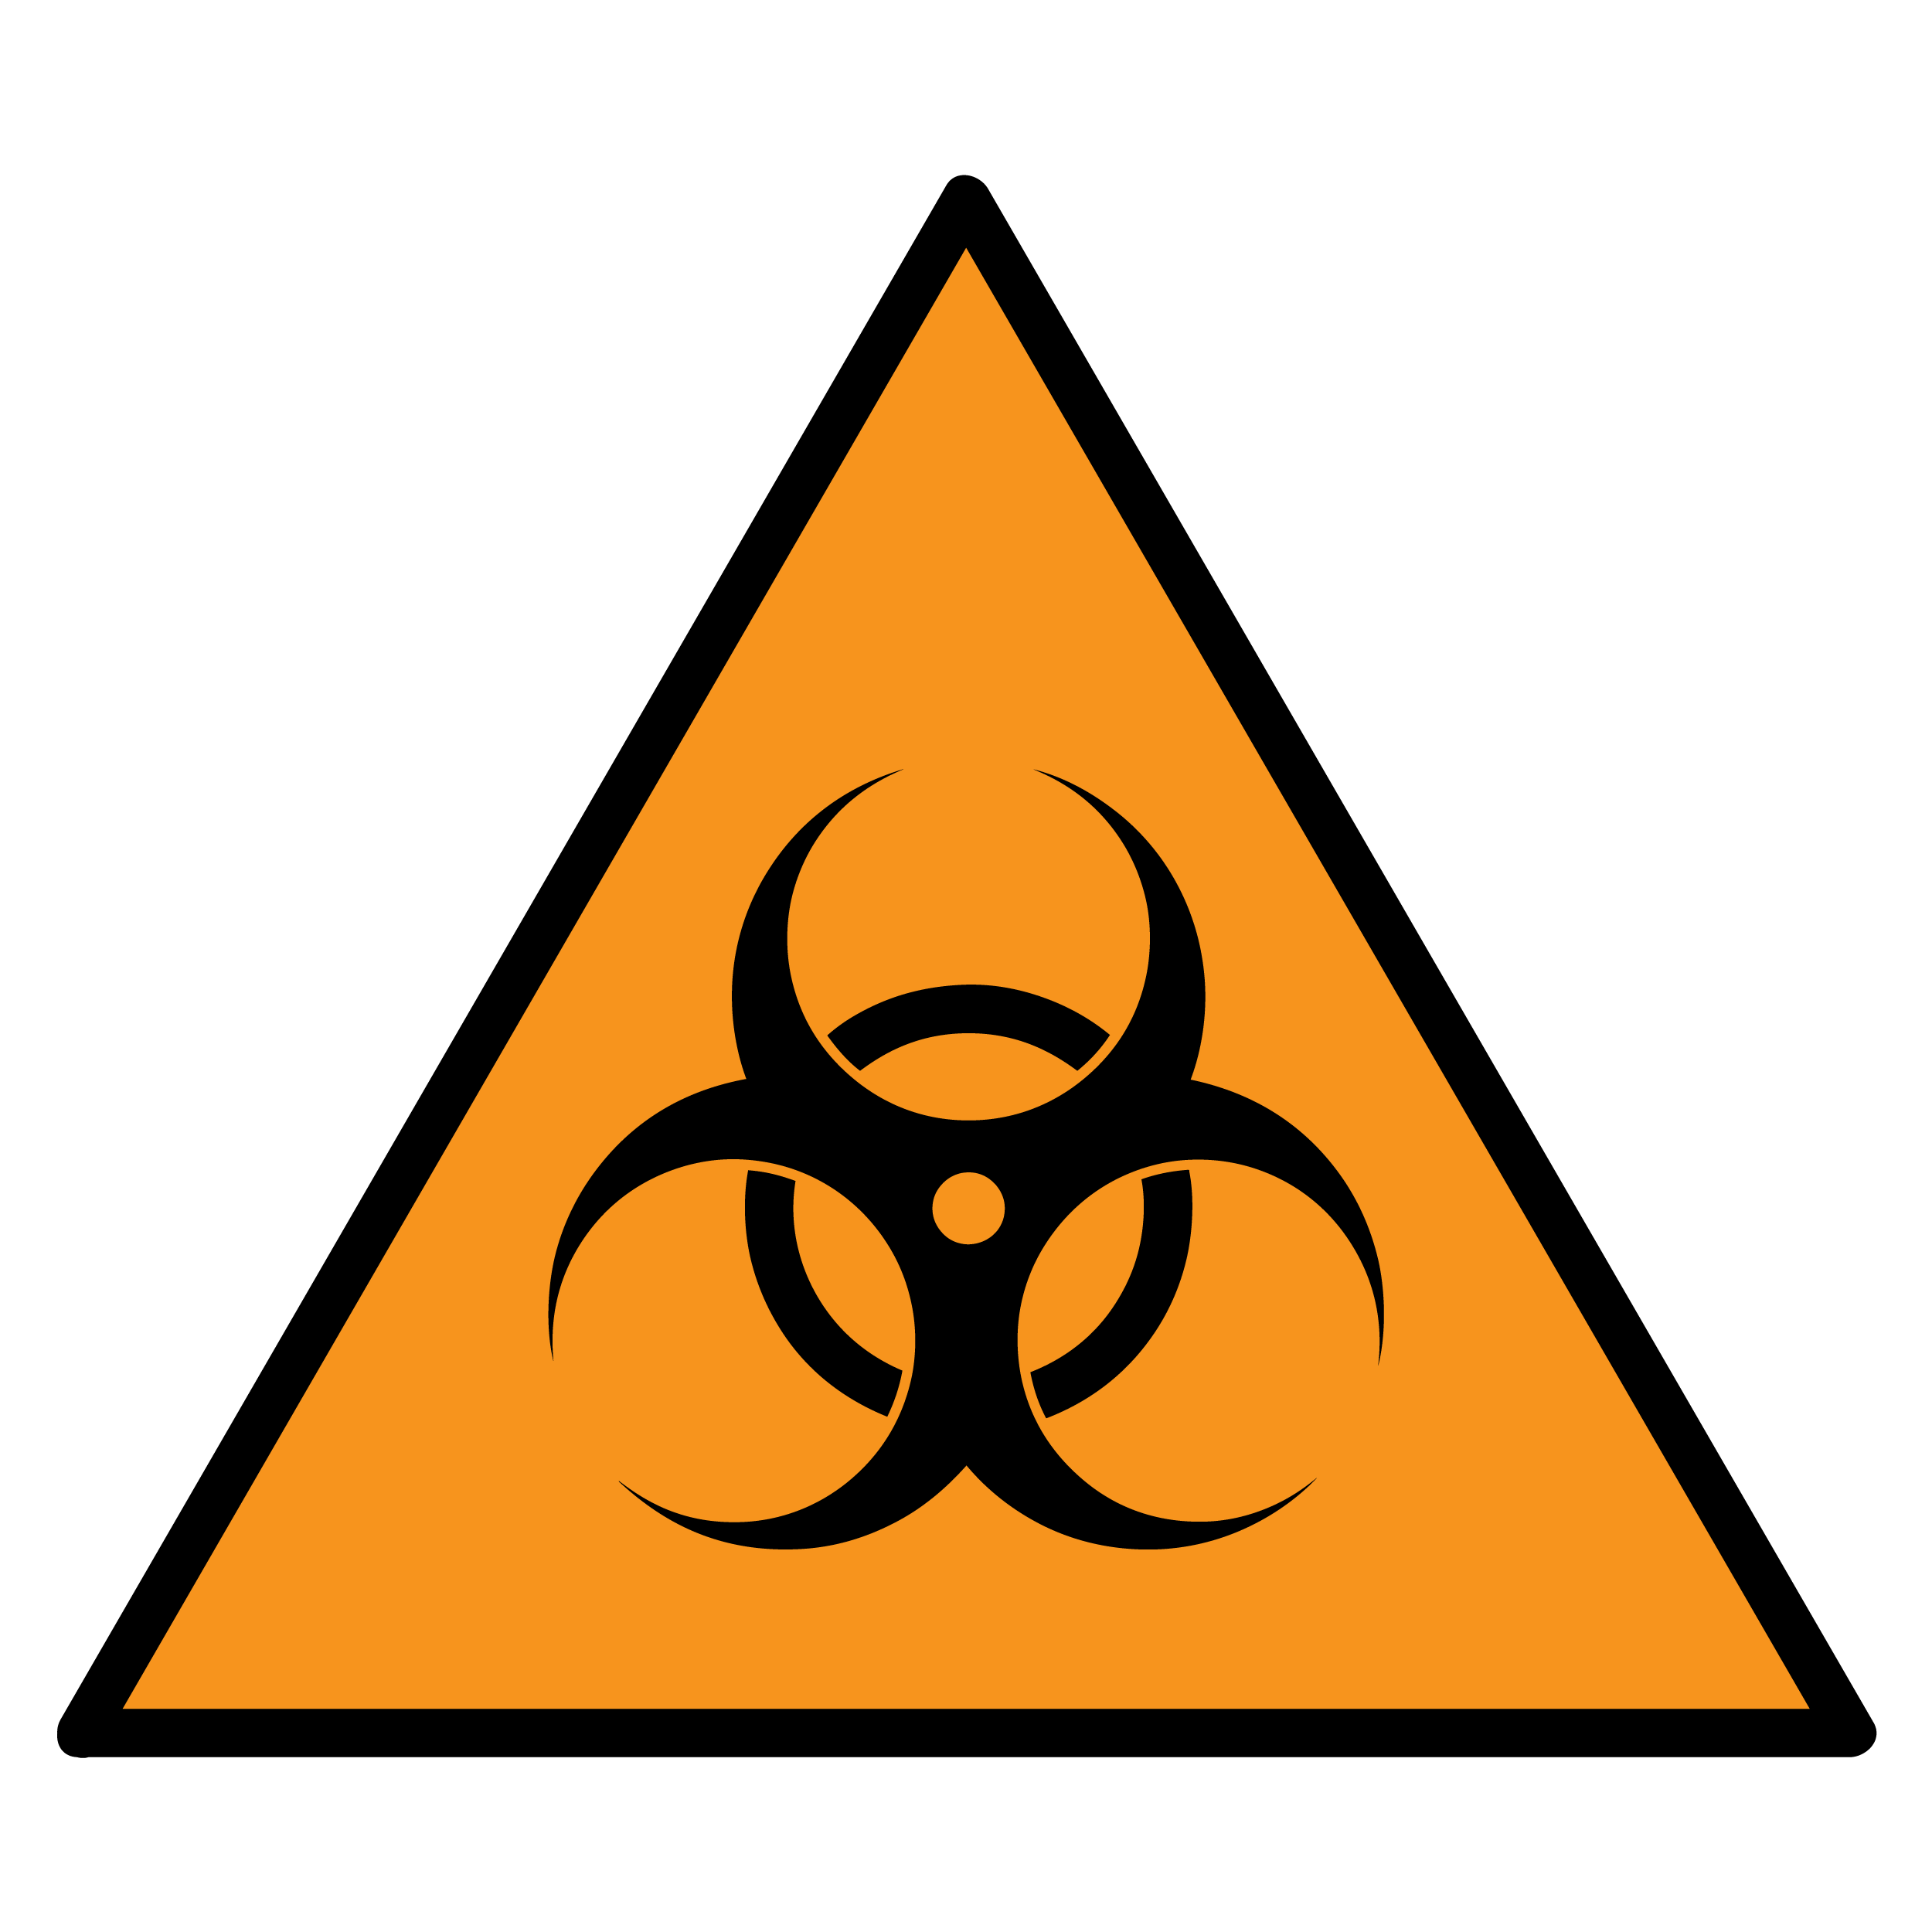 biohazard-signs-clipart-best